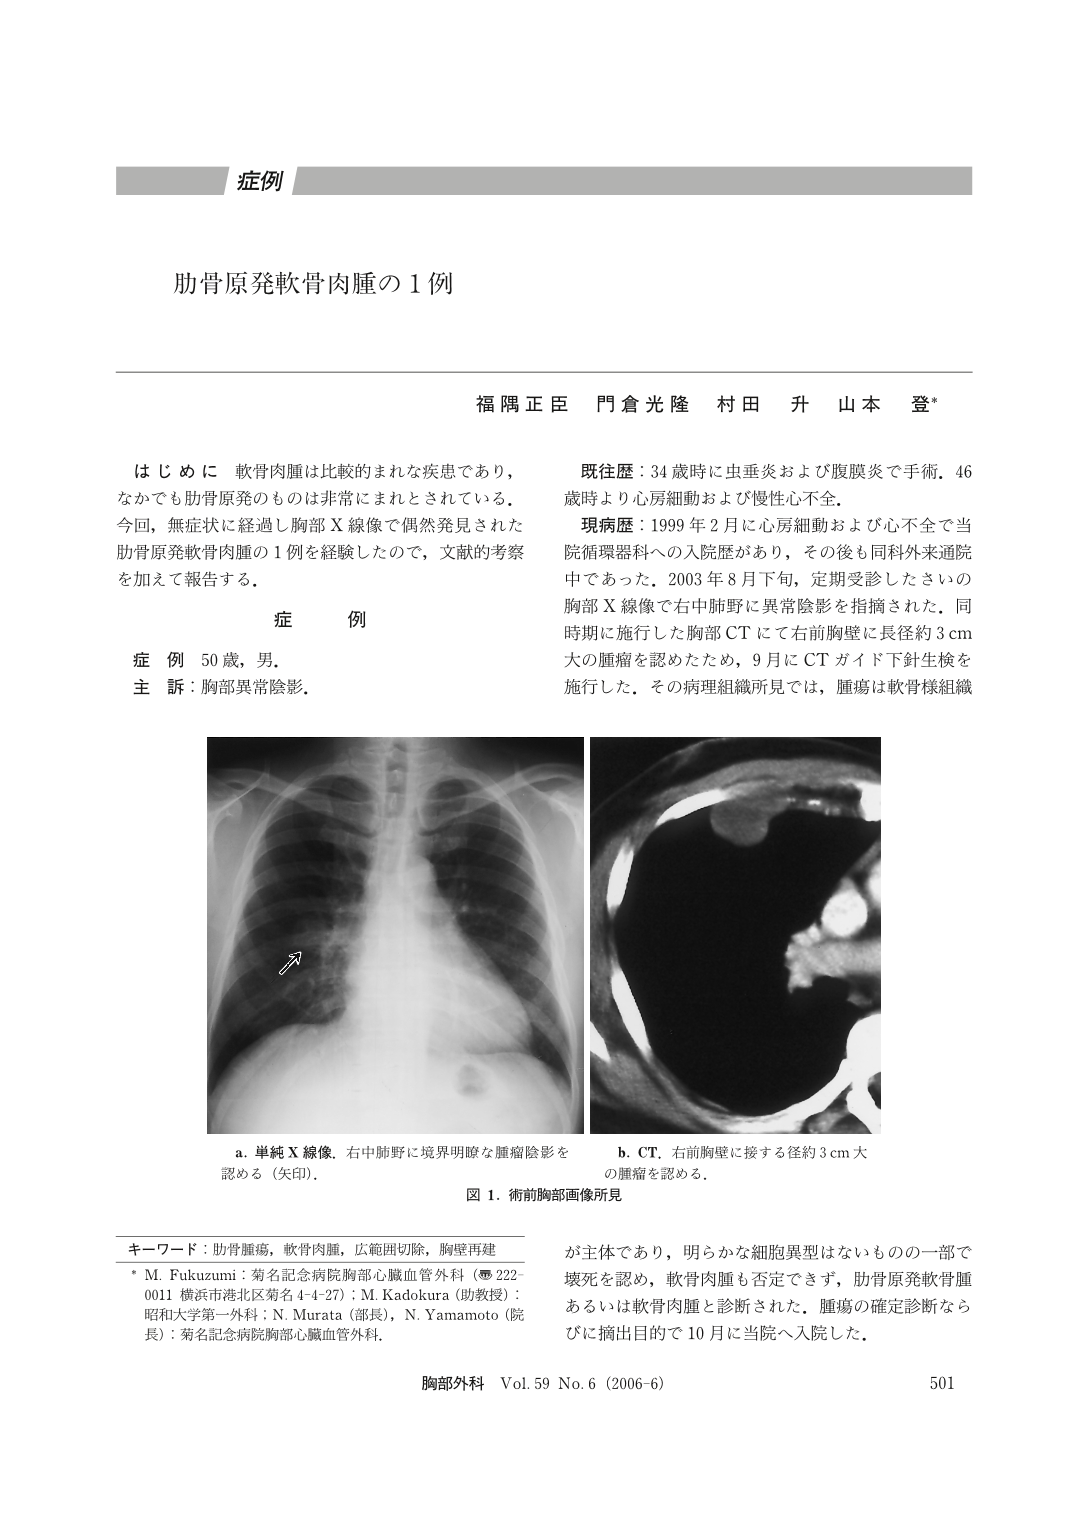 肋骨原発軟骨肉腫の1例 胸部外科 59巻6号 医書 Jp